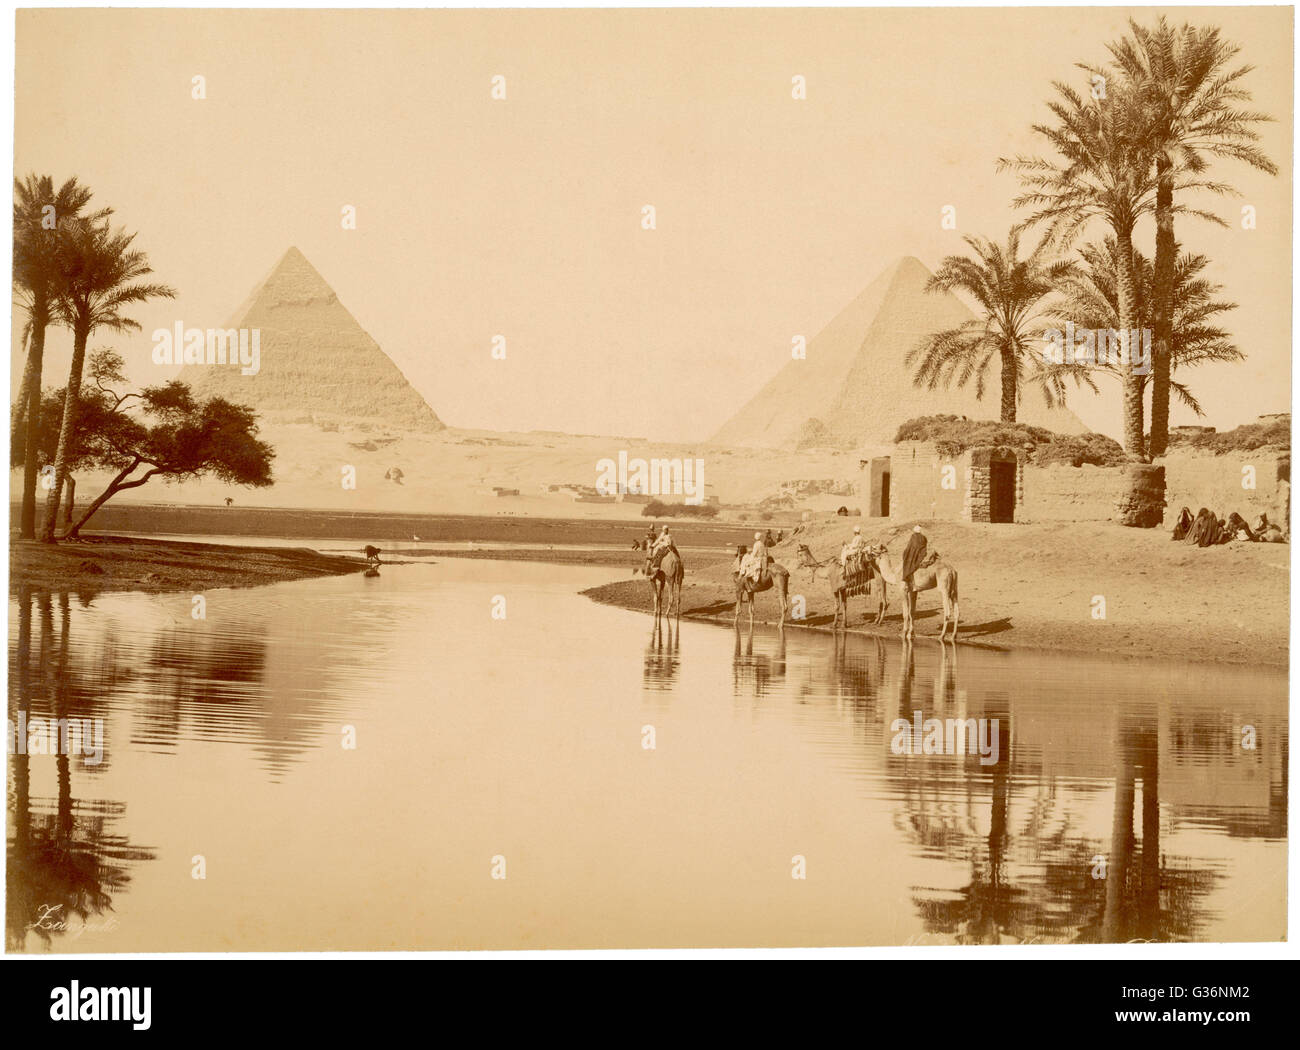 Le Piramidi di Giza in Egitto, con acqua, alberi e cammelli in primo piano. Data: circa 1890 Foto Stock